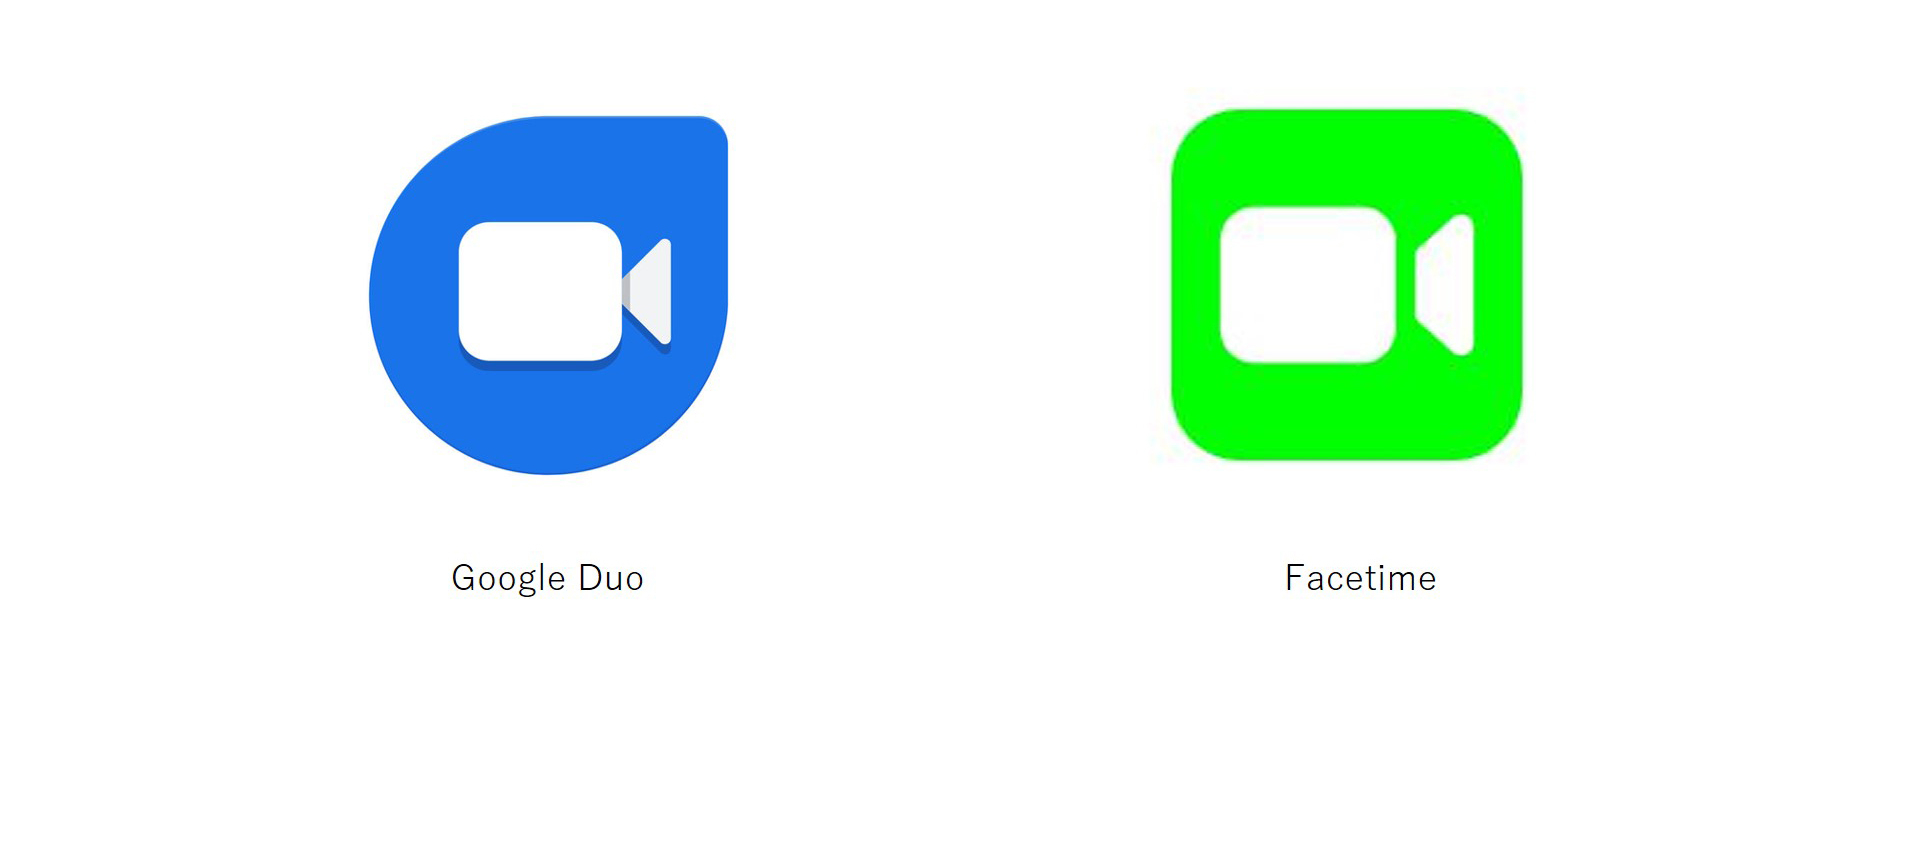 使用するアプリ（Google Duo、Facetime）の画像